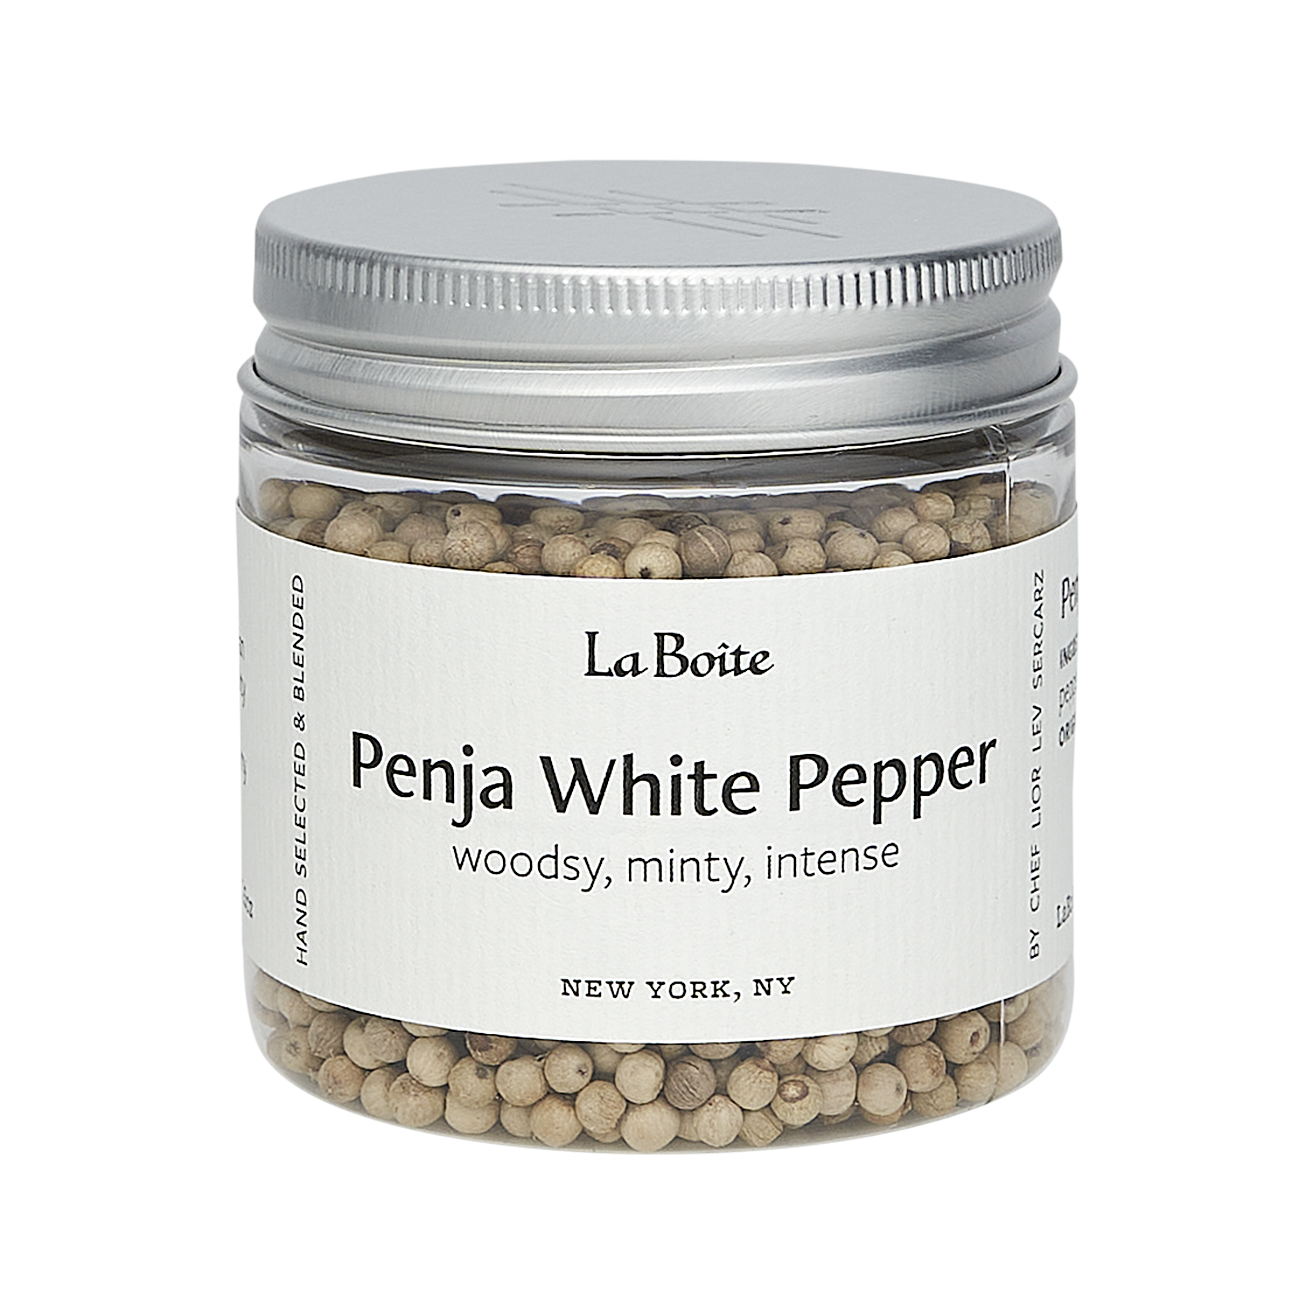 Penja White Pepper